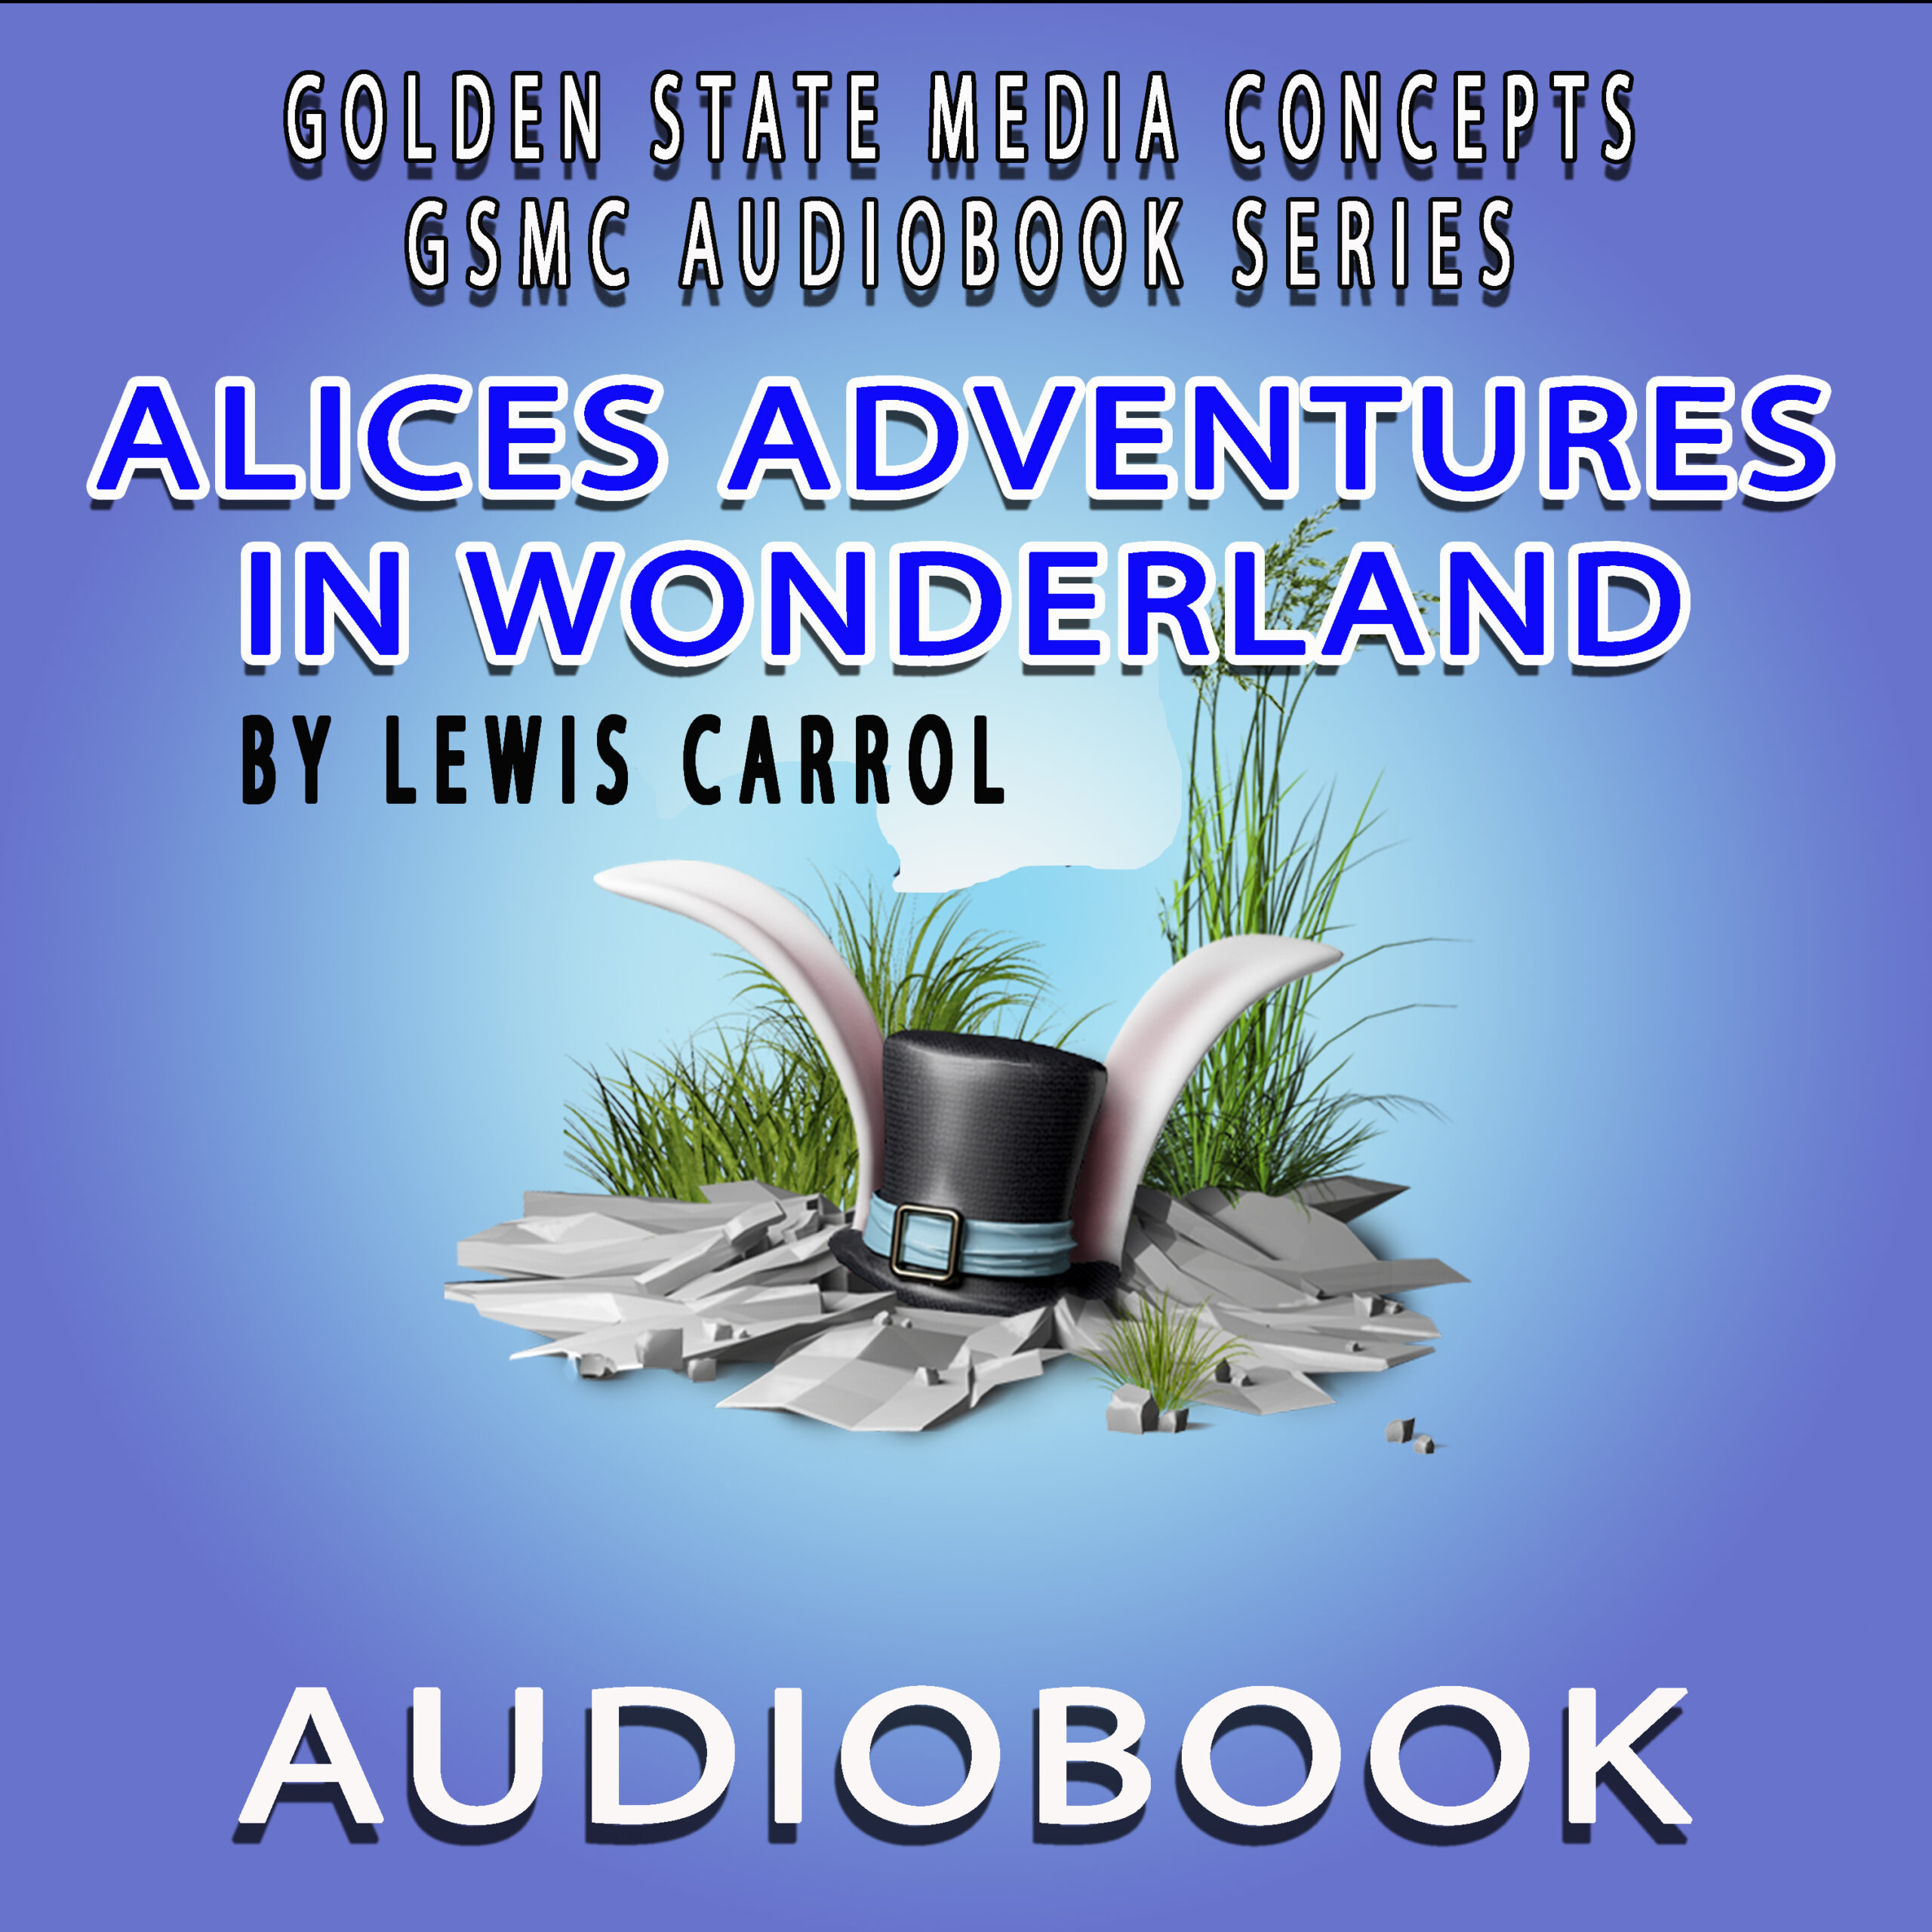 Alices Adventures in wonderland